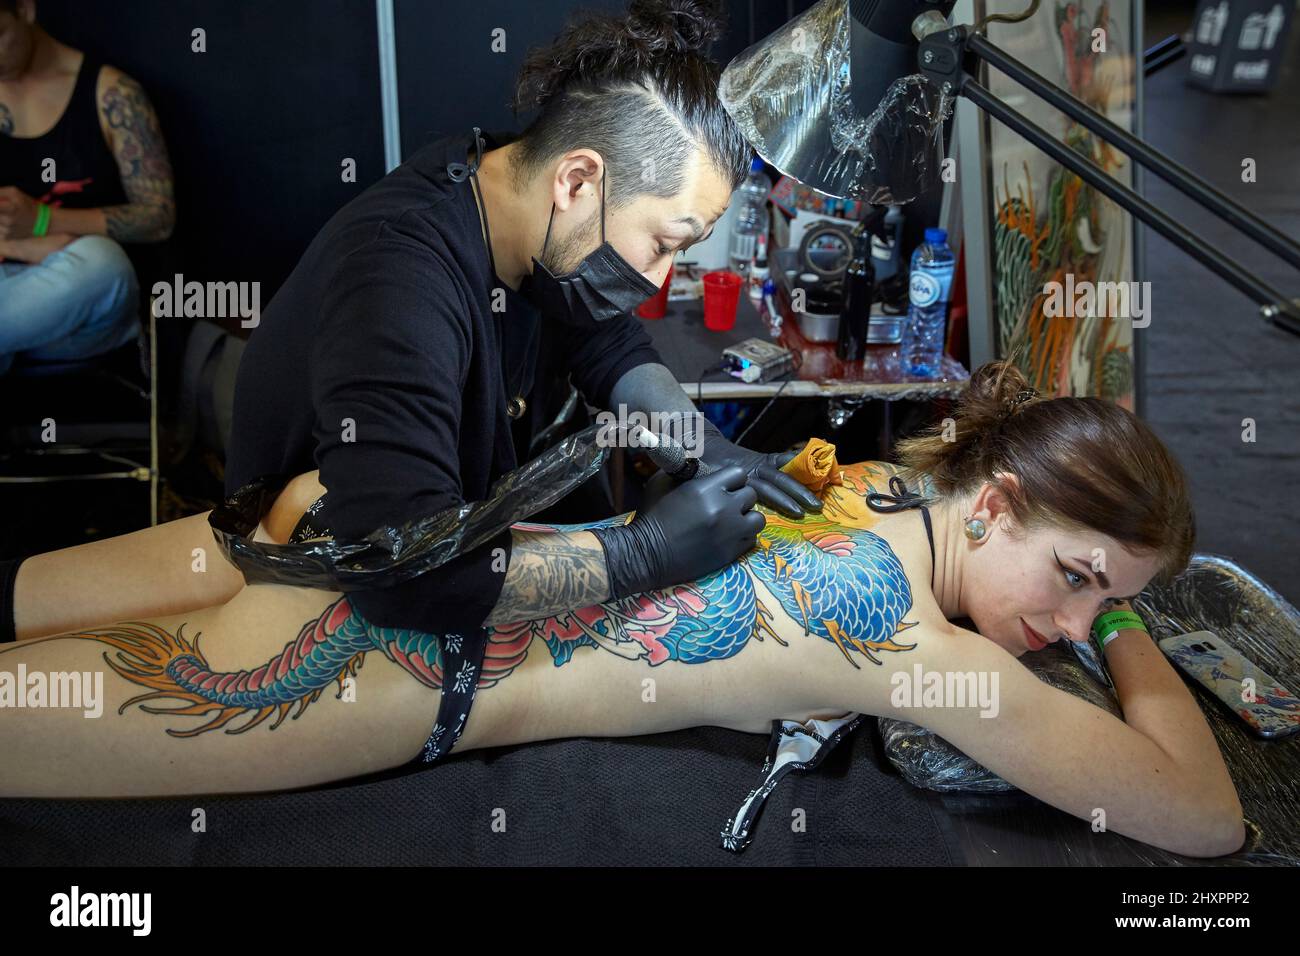 Certains des artistes de tatouage participant à l'événement faisant certains de leurs dessins à Amsterdam Banque D'Images